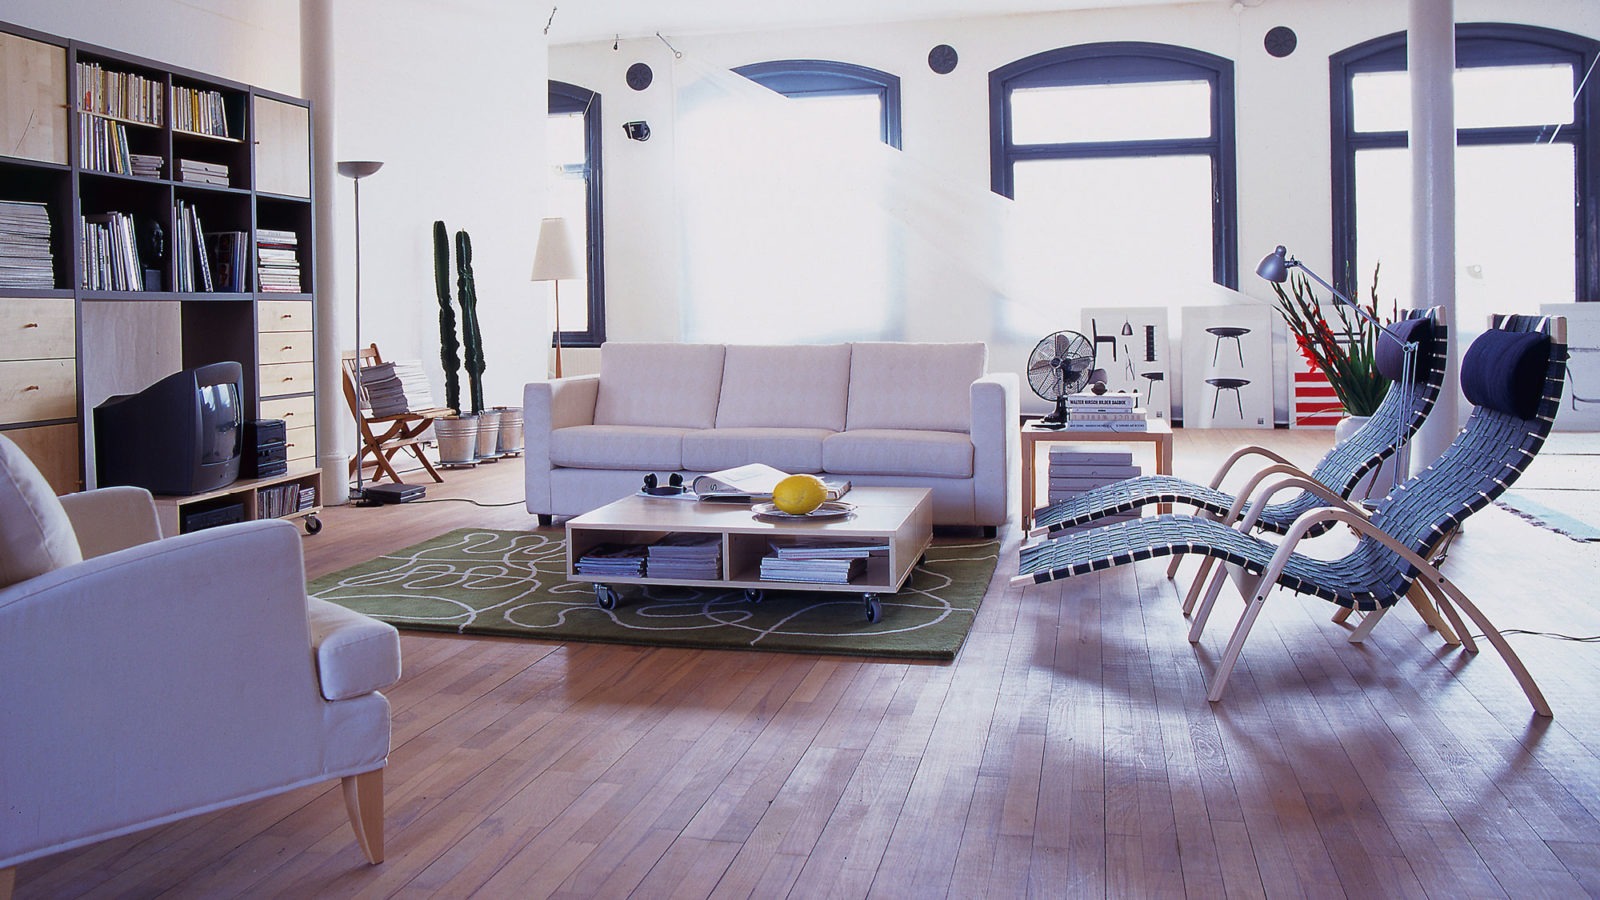 Habitación con columnas y suelo de madera. Junto a una mesa con ruedecillas hay un sofá, un sillón y dos chaise-longues.